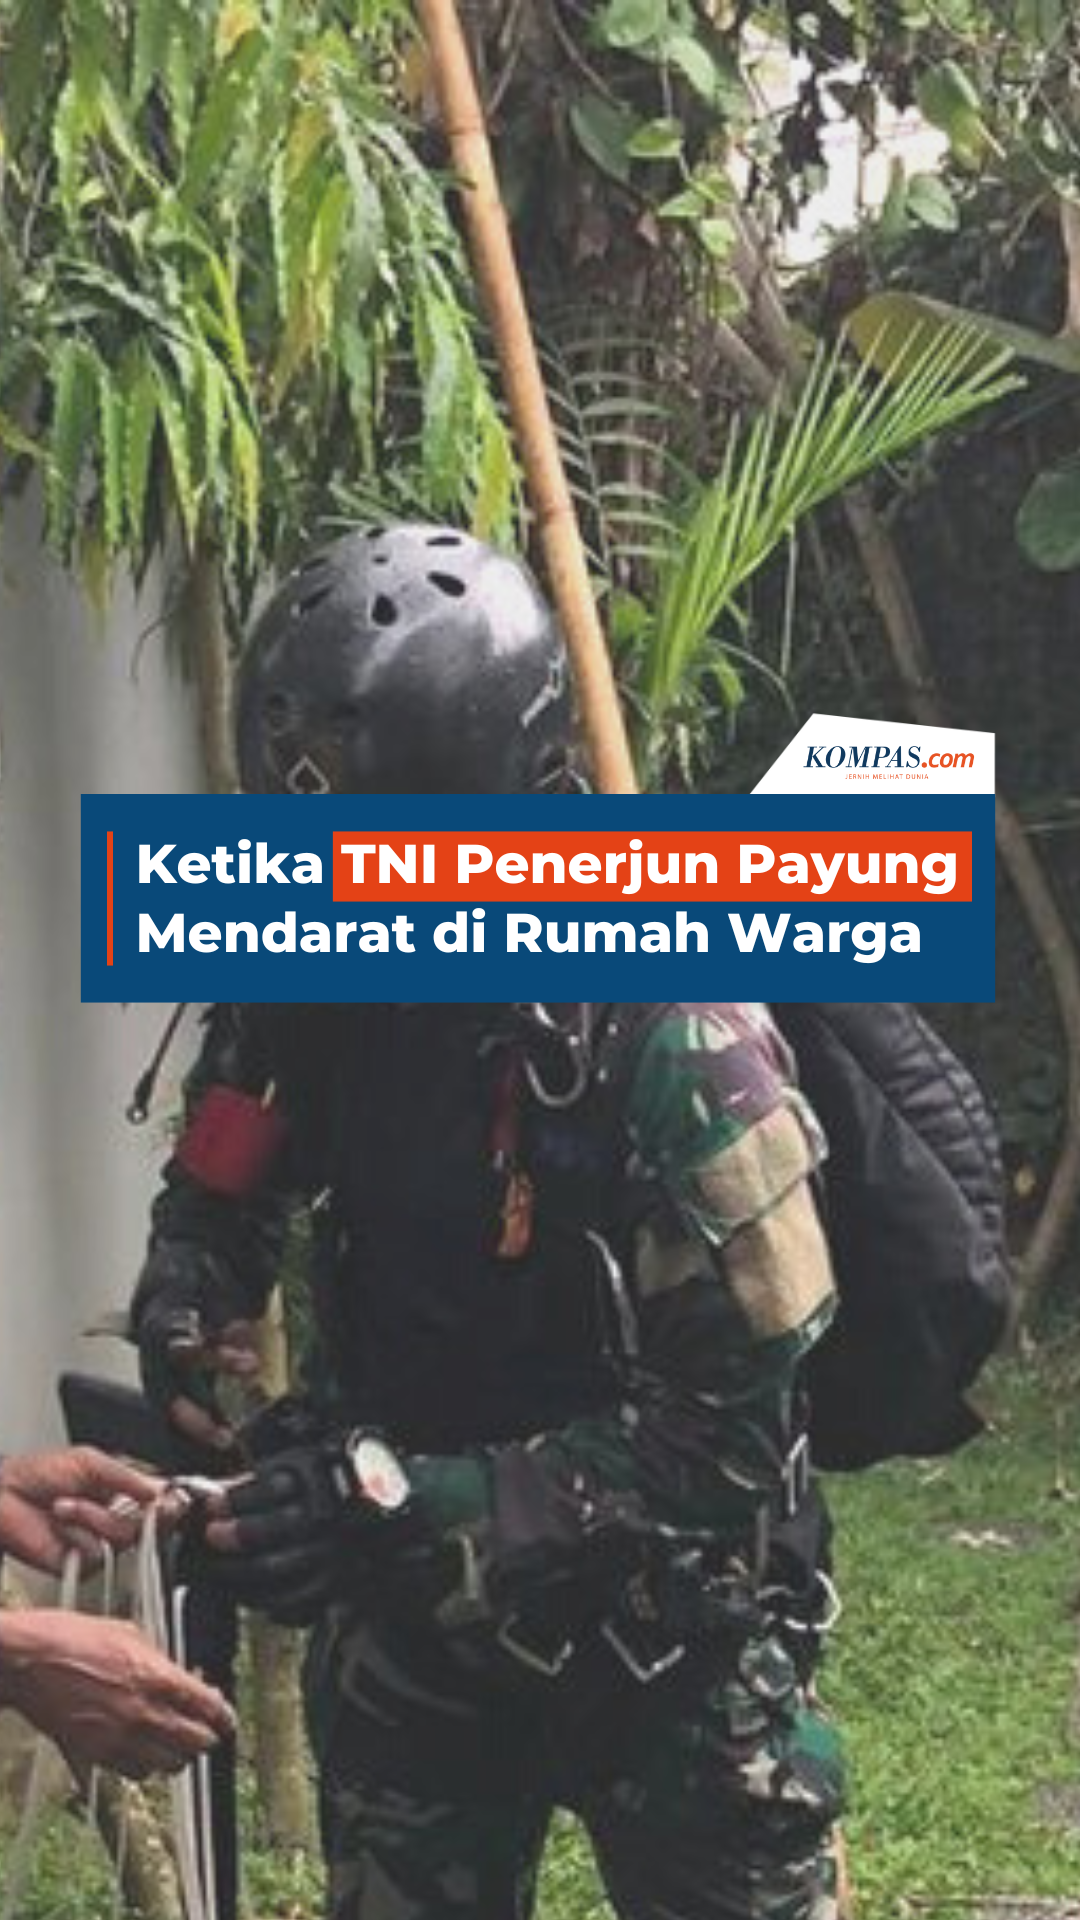 Ketika TNI Penerjun Payung Mendarat di Rumah Warga